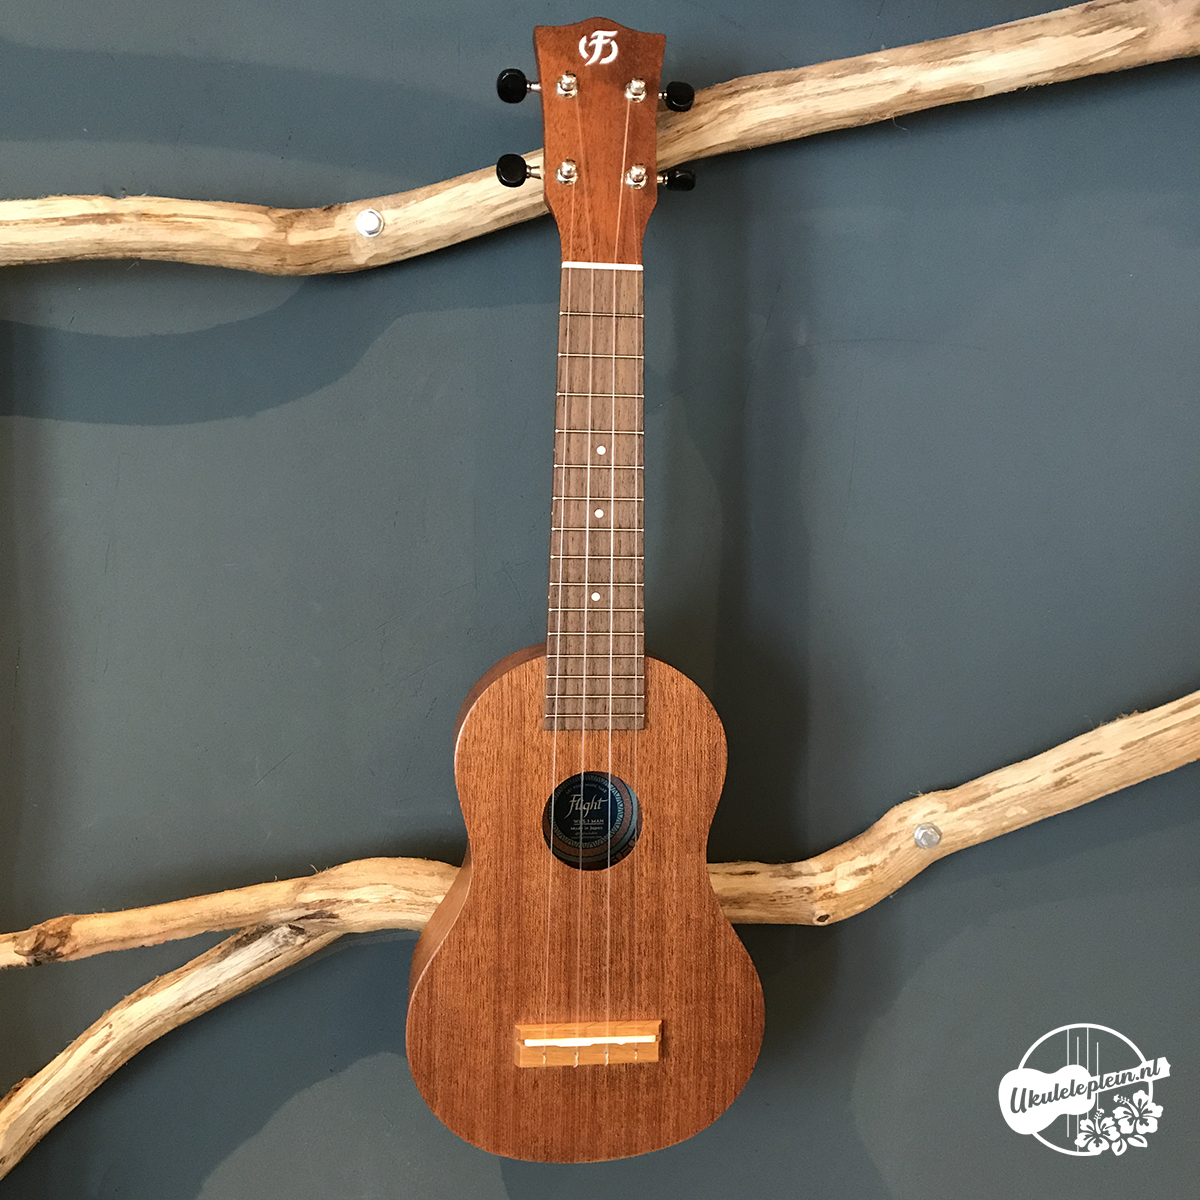 Flight WUS-3 ukulele